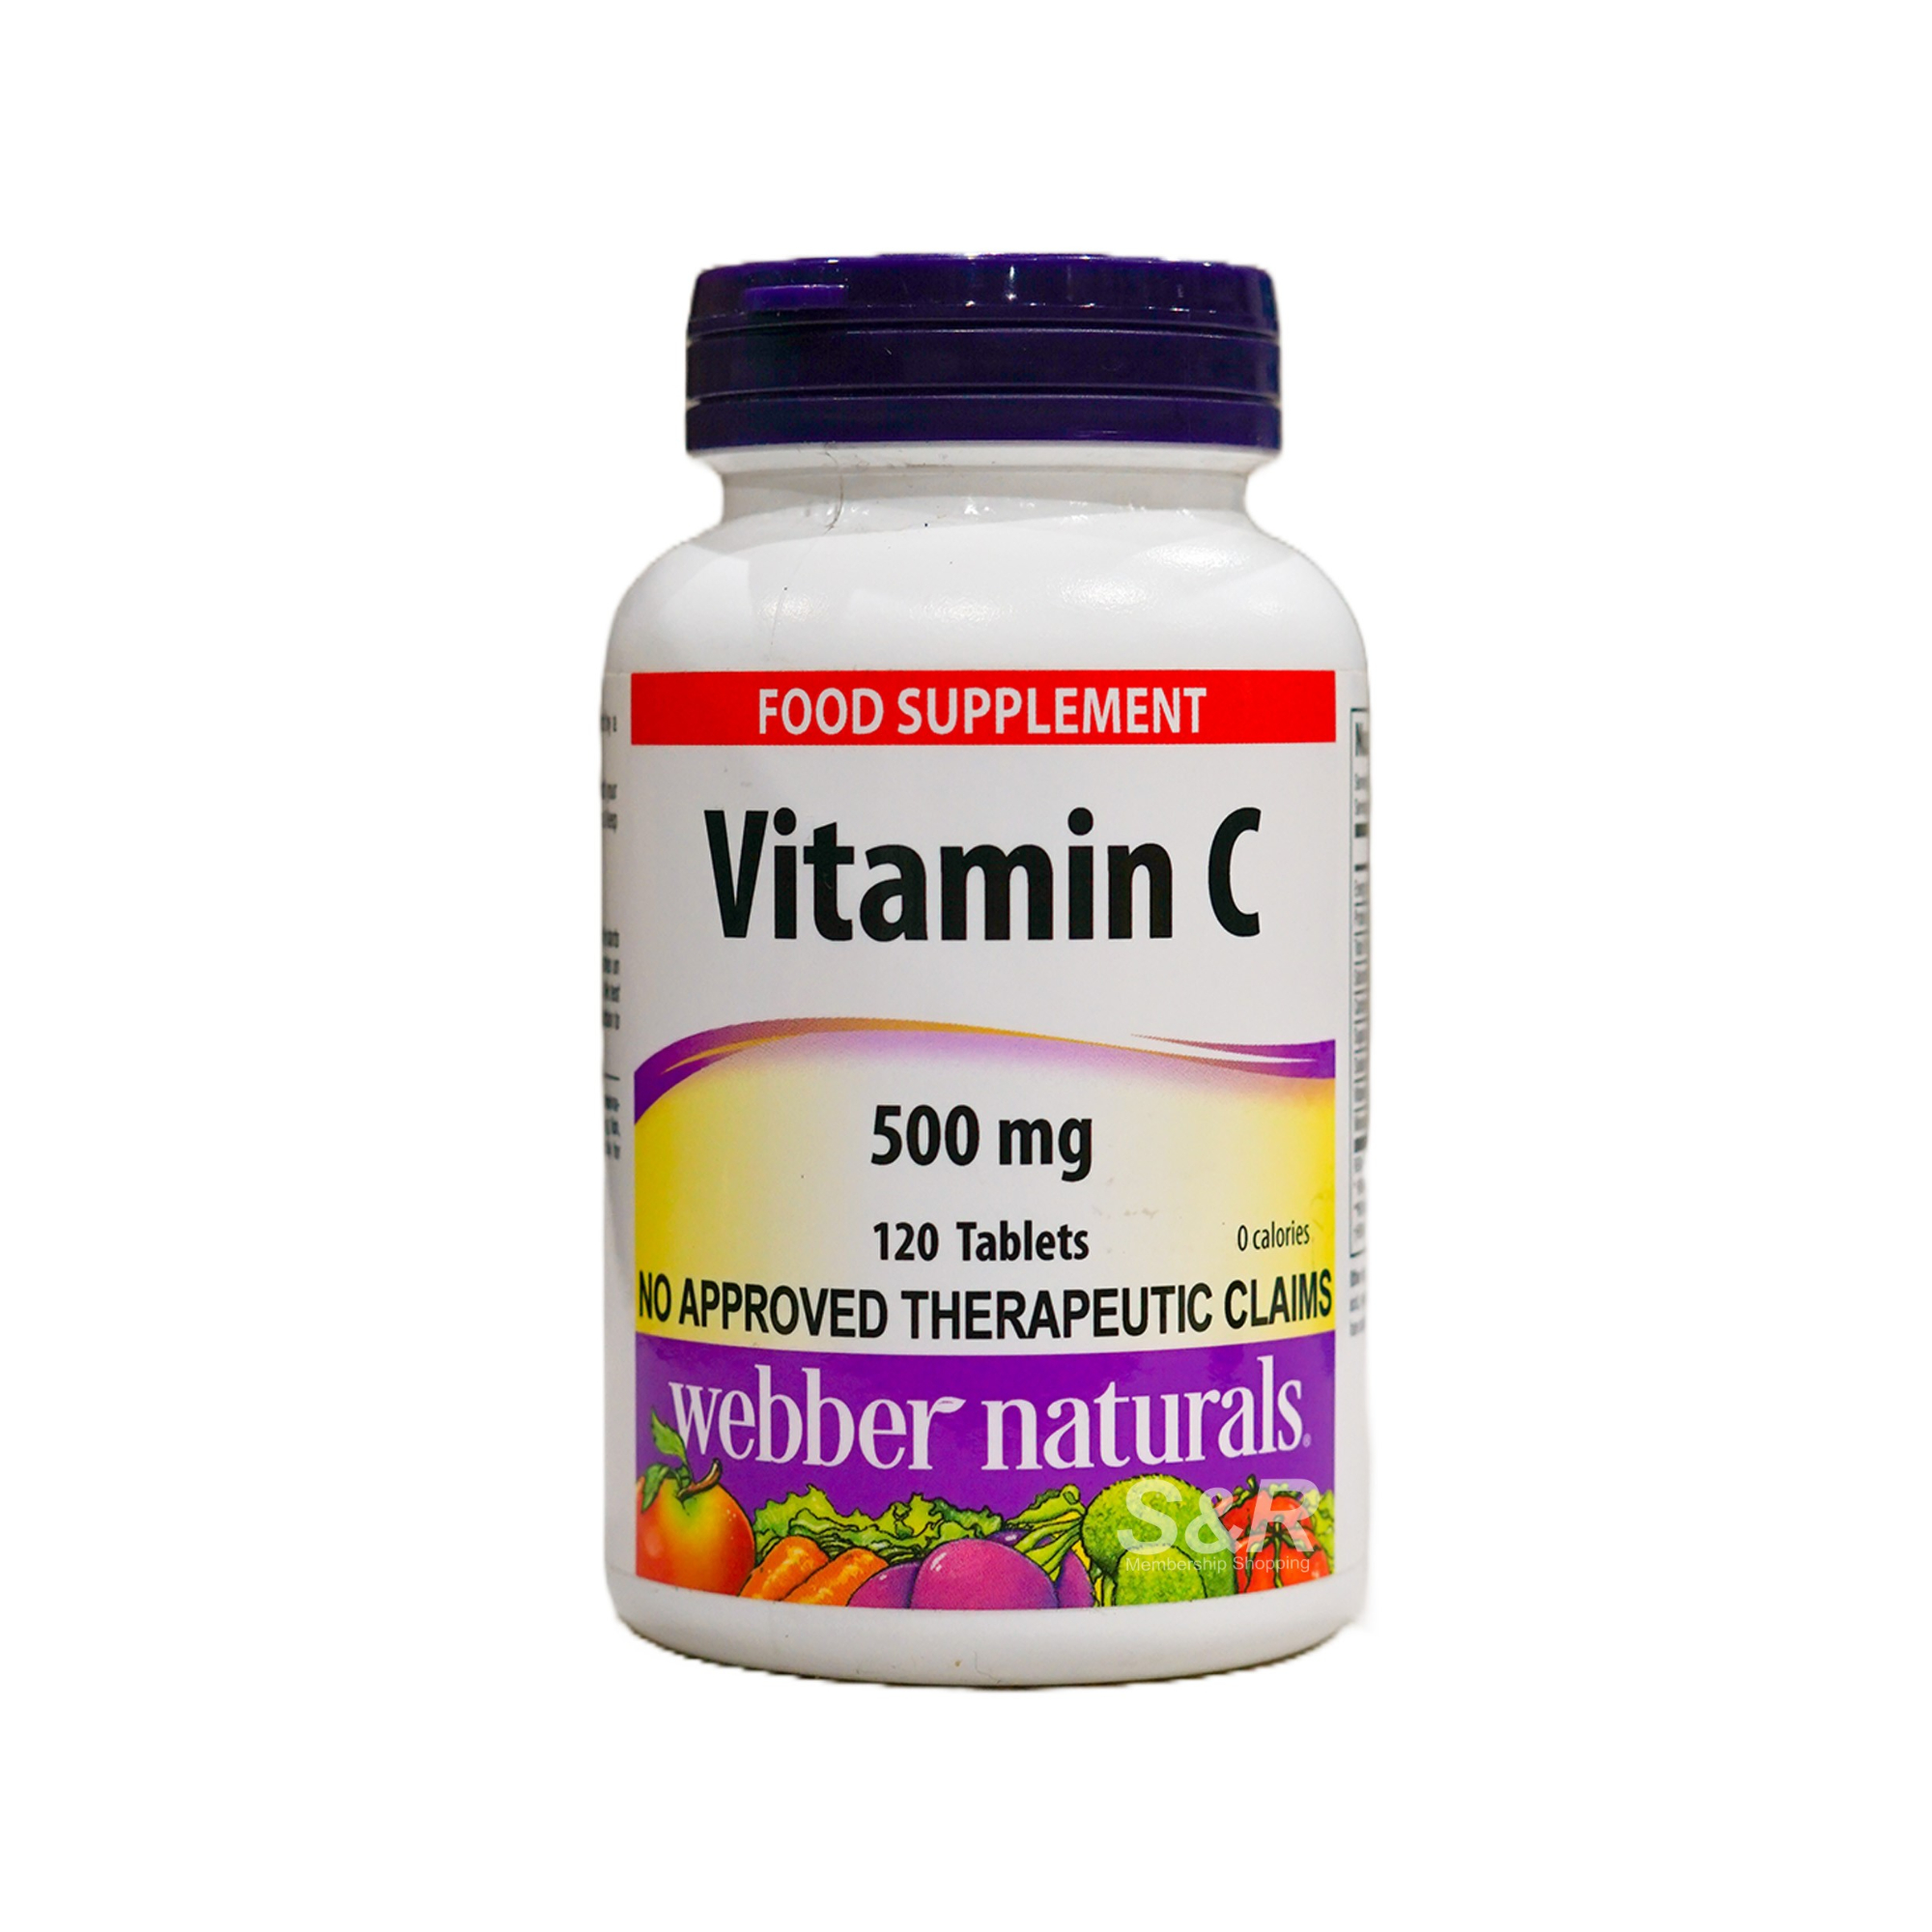 Webber Naturals 500mg Vitamin C Food Supplement 120pcs